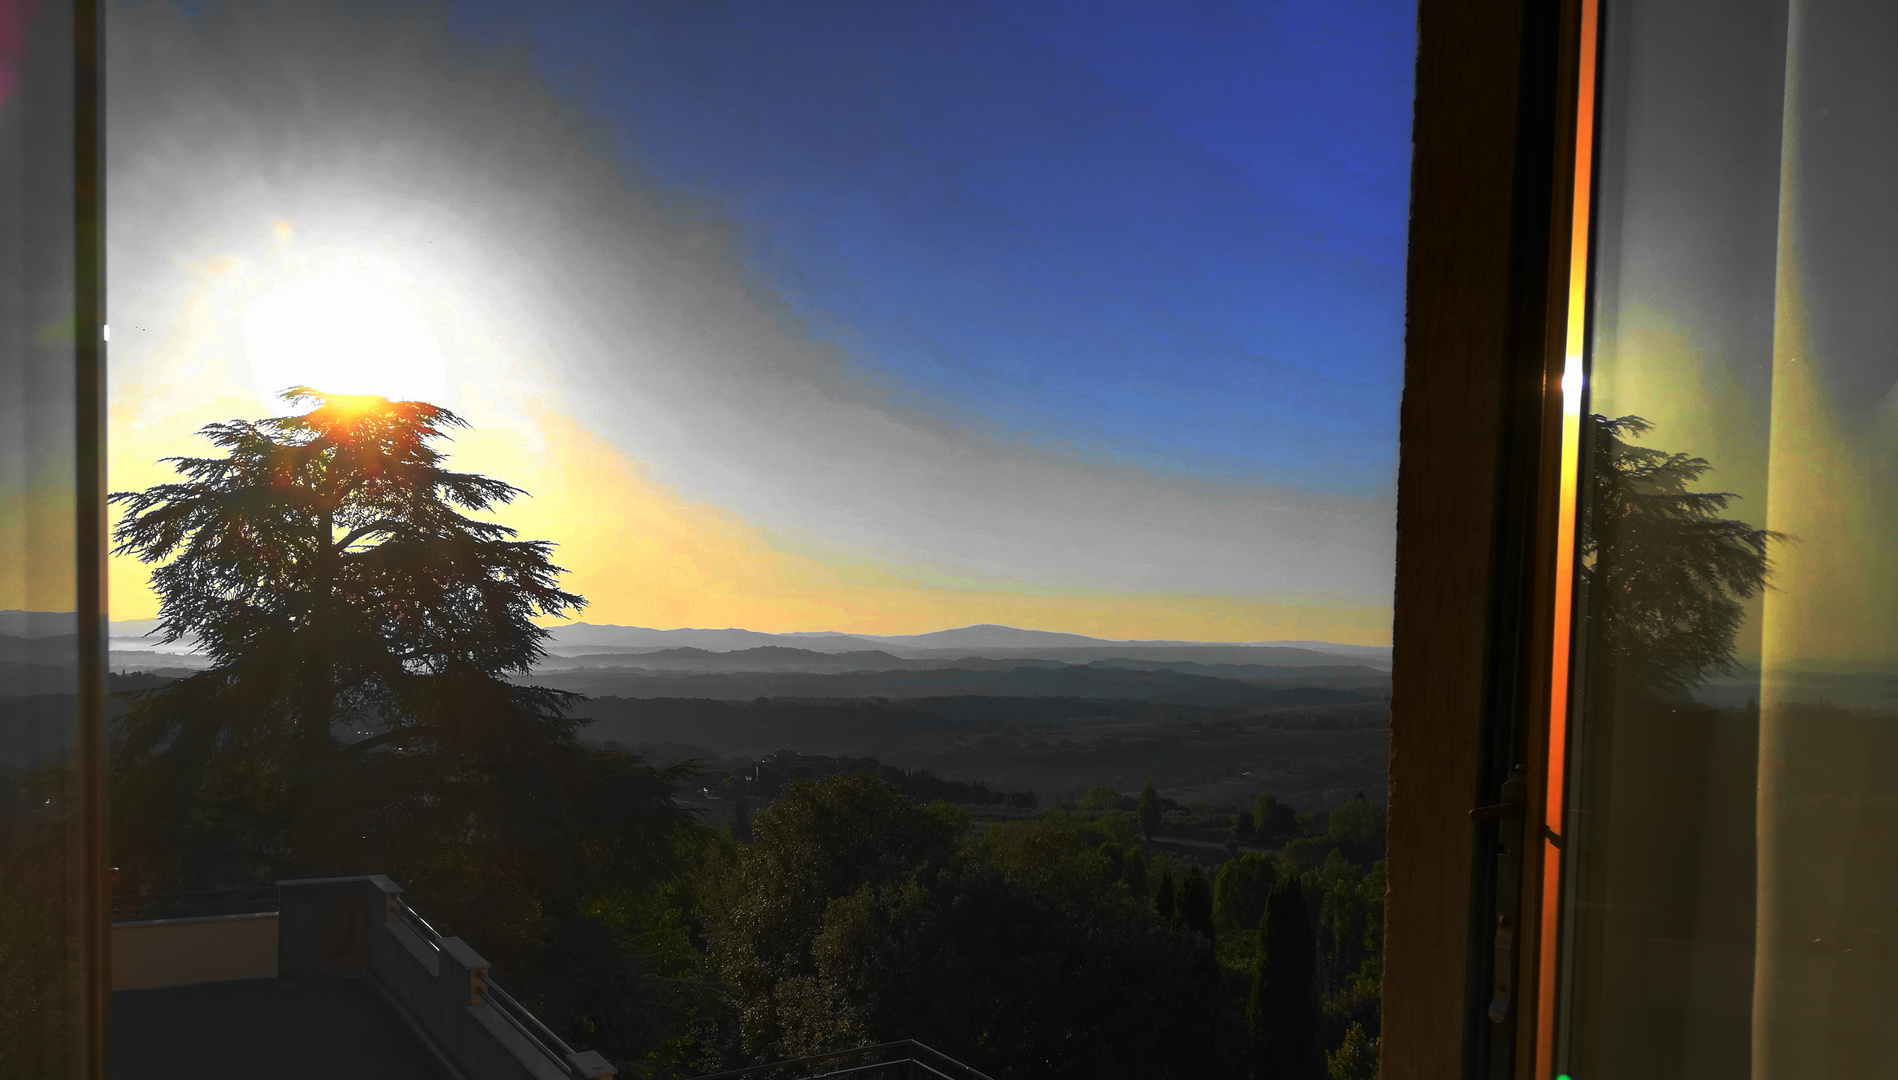 Sonnenaufgang in der Toscana